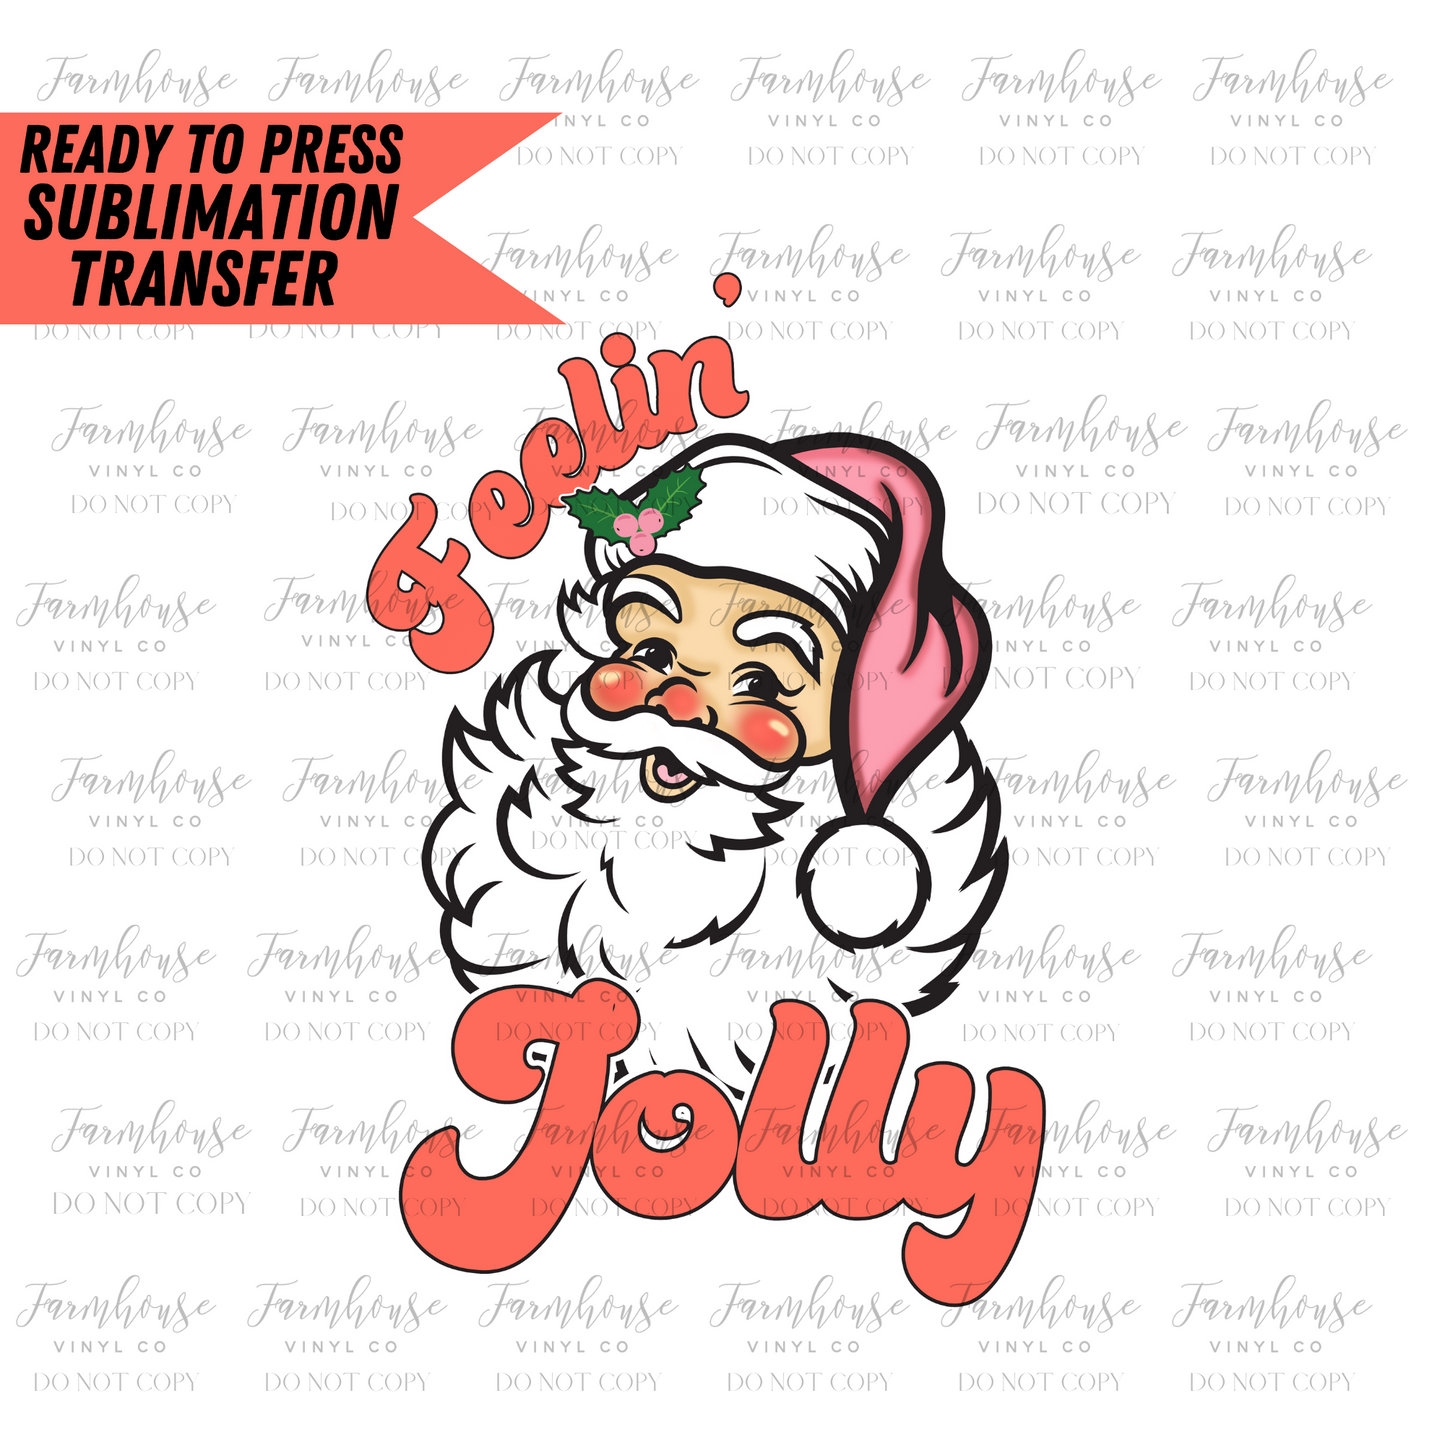 Feelin Jolly Santa Ready To Press Sublimation Transfer - Farmhouse Vinyl Co